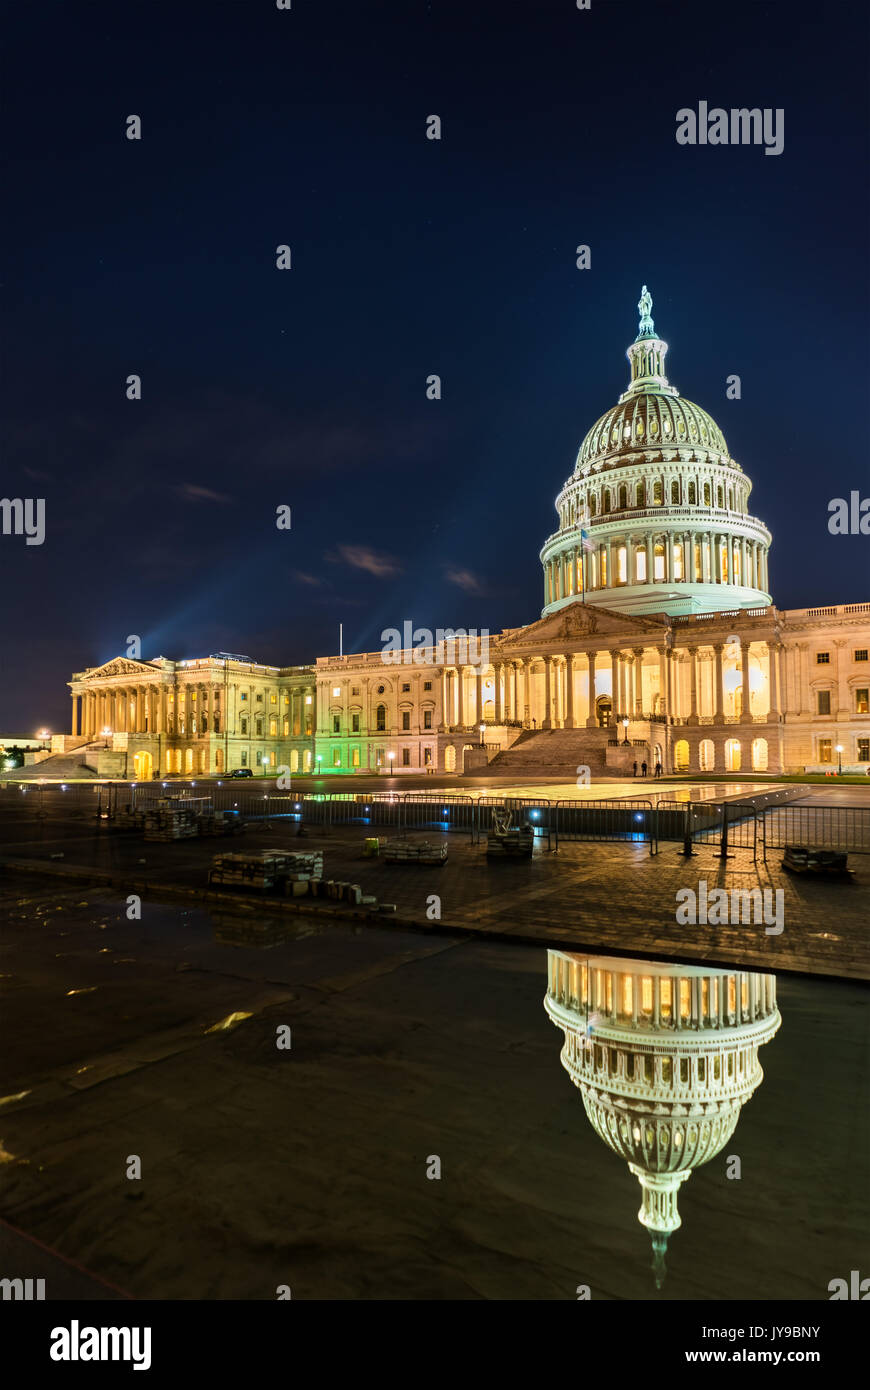 El edificio del Capitolio de los Estados Unidos en la noche en Washington, D.C. Foto de stock